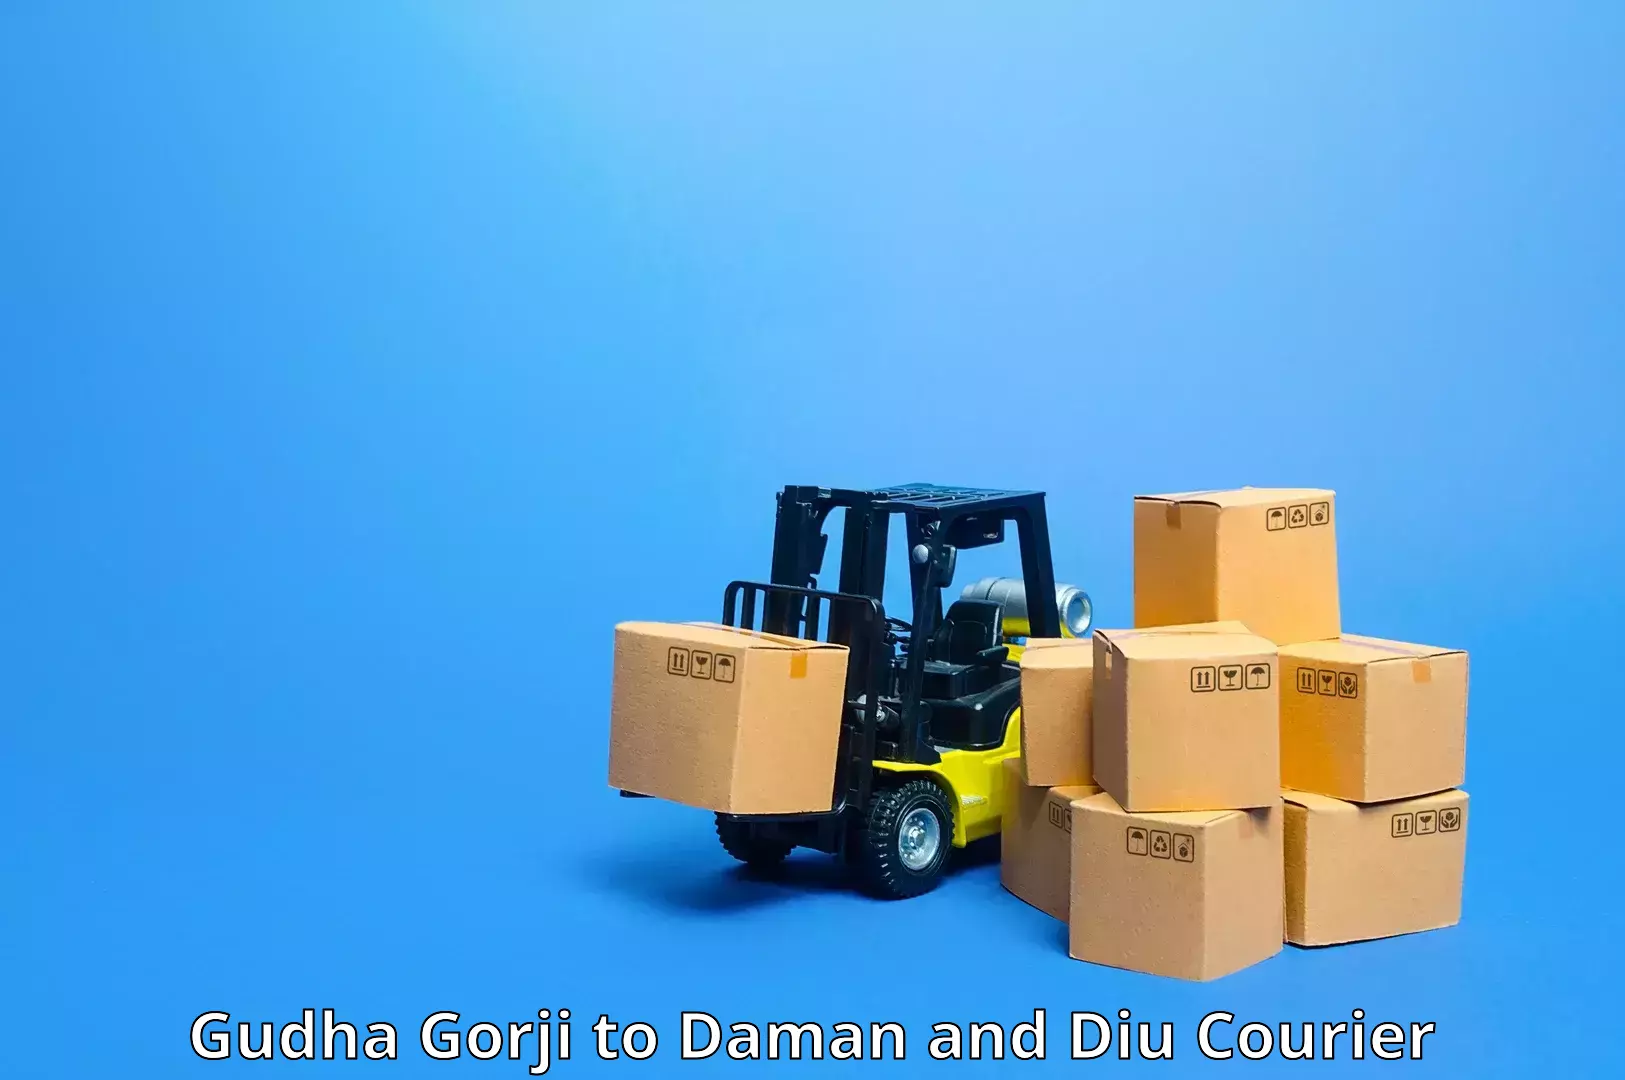 Express shipping Gudha Gorji to Daman and Diu